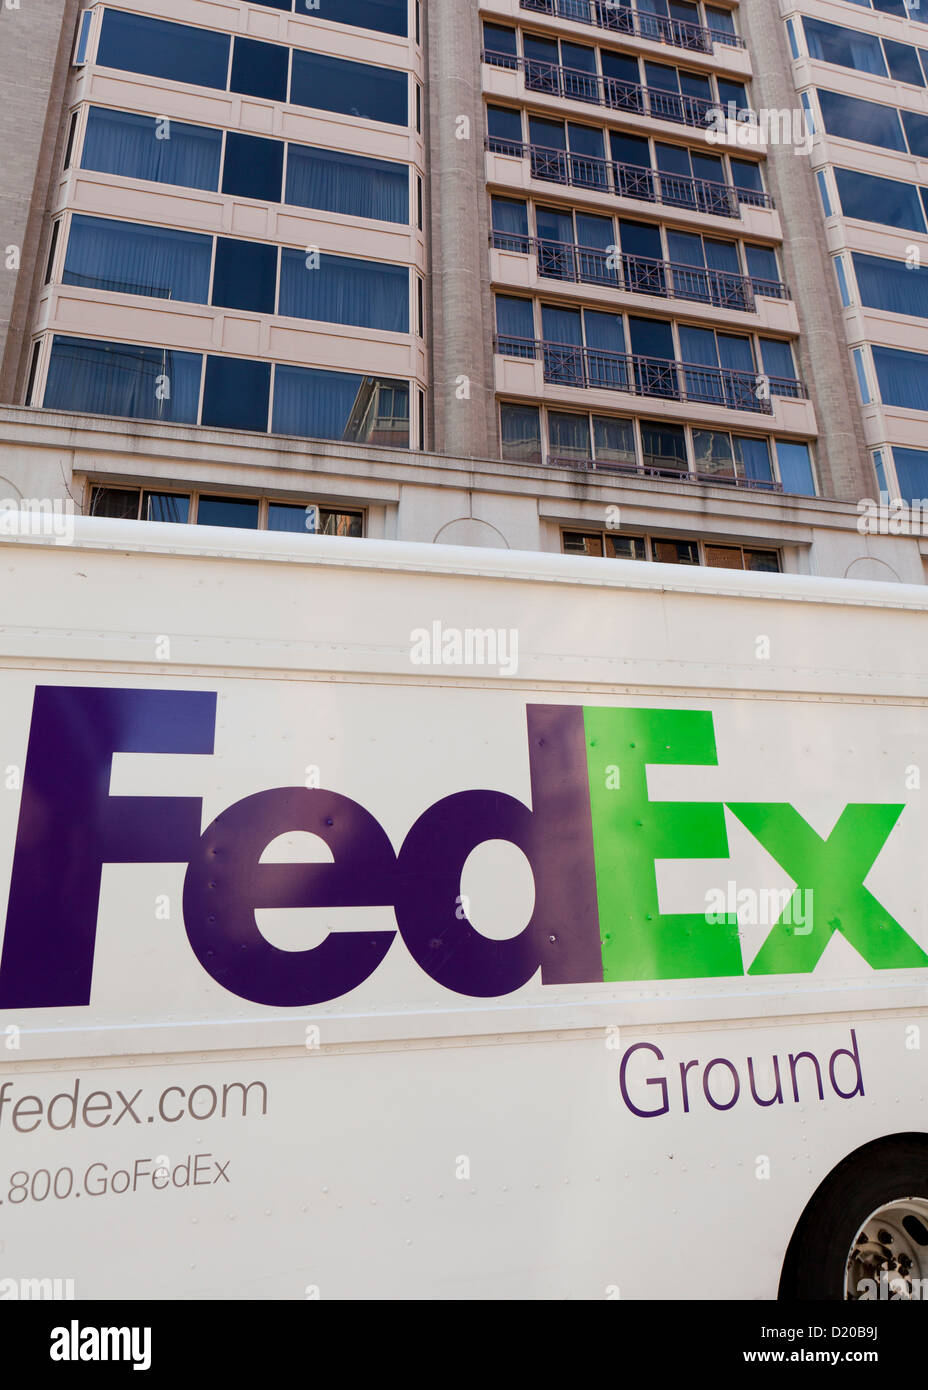 Camion de livraison FedEx Ground en face d'une tour à bureau Banque D'Images